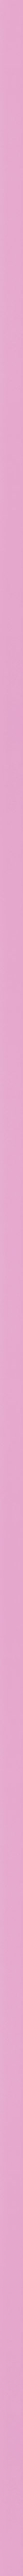 Μοντέρνα ροζ κορνίζα frame